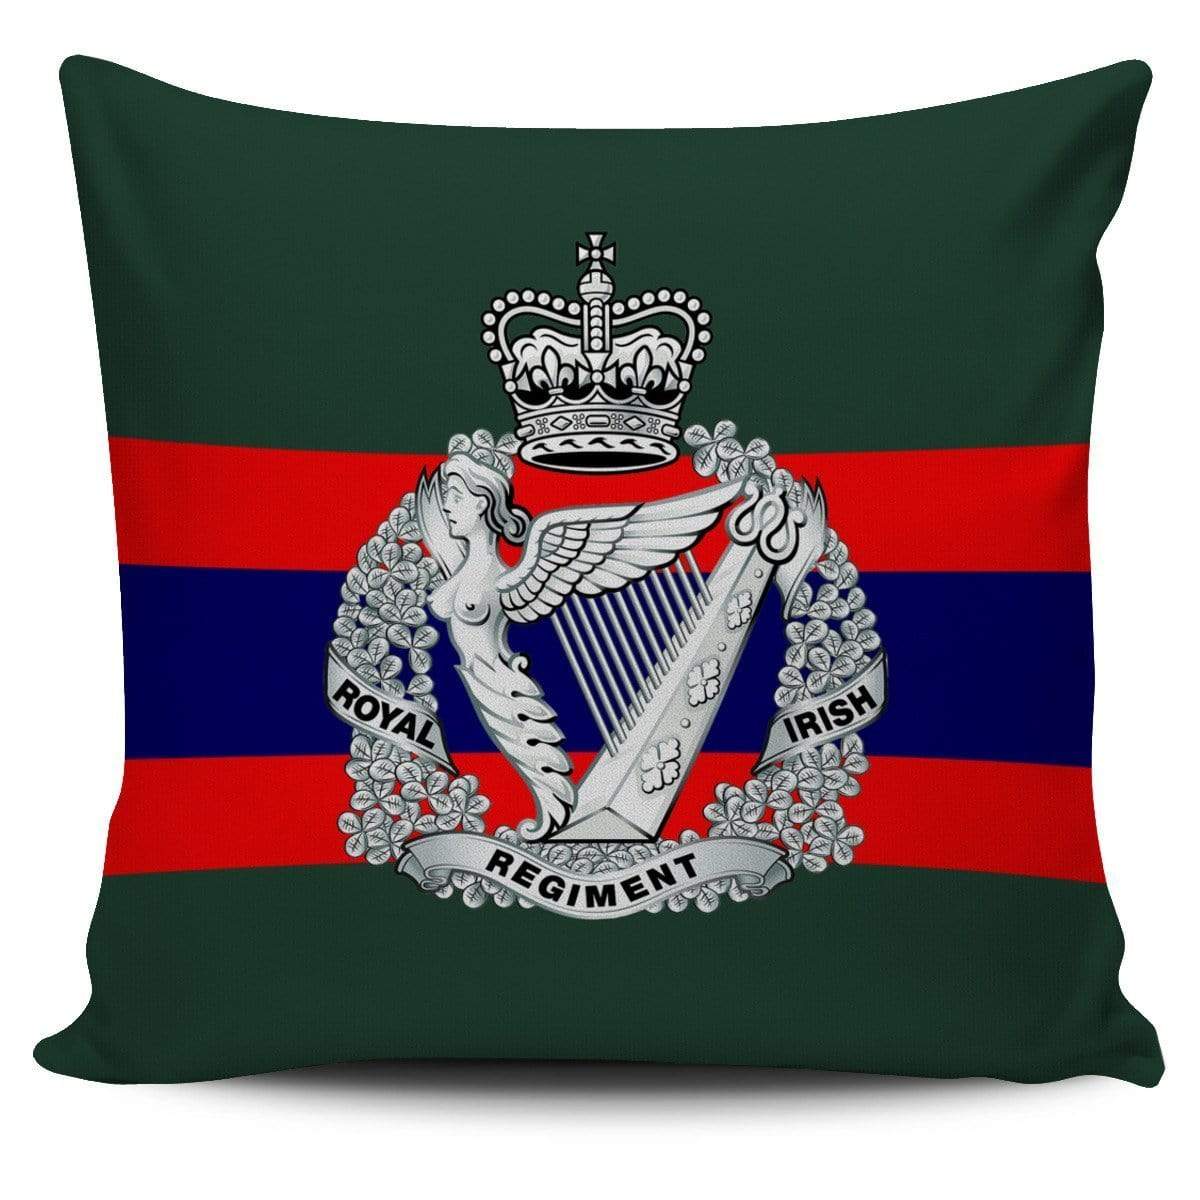 cushion cover Royal Irish Regiment Royal Irish Regiment Cushion Cover